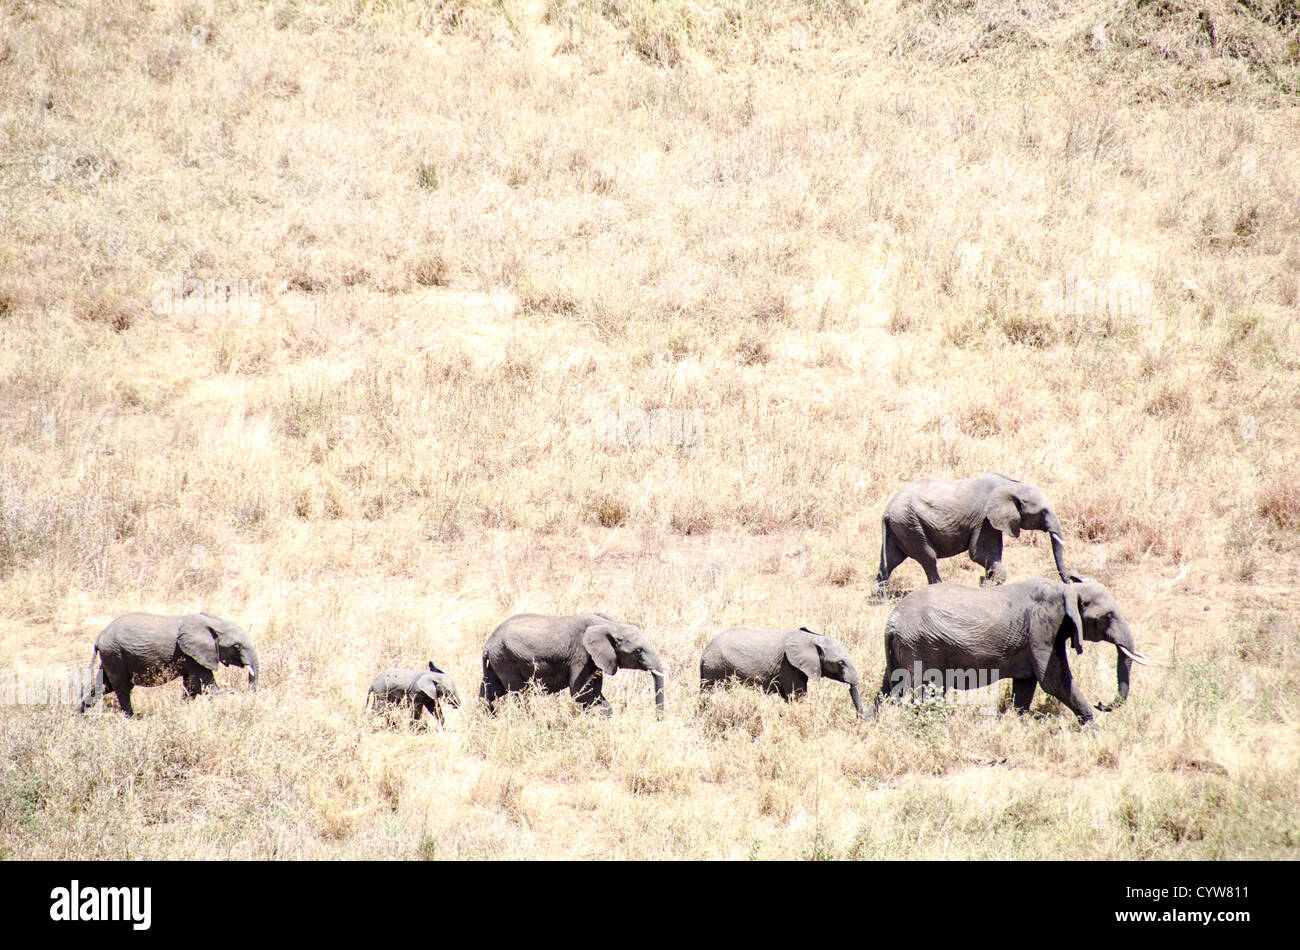 TARANGIRE-NATIONALPARK, Tansania - Eine Elefantenherde durchquert eine Grasfläche im Tarangire-Nationalpark im Norden Tansanias, nicht weit vom Ngorongoro-Krater und der Serengeti. Der Ngorongoro-Krater, der zum UNESCO-Weltkulturerbe gehört, ist ein riesiger vulkanischer Krater im Norden Tansanias. Sie wurde vor 2-3 Millionen Jahren gegründet, hat einen Durchmesser von etwa 20 Kilometern und ist die Heimat vielfältiger Tiere, einschließlich der „Big Five“-Wildtiere. Das Ngorongoro Conservation Area, bewohnt von den Maasai, enthält auch bedeutende archäologische Stätten wie die Olduvai-Schlucht und Laetoli, die Einblicke in e bieten Stockfoto